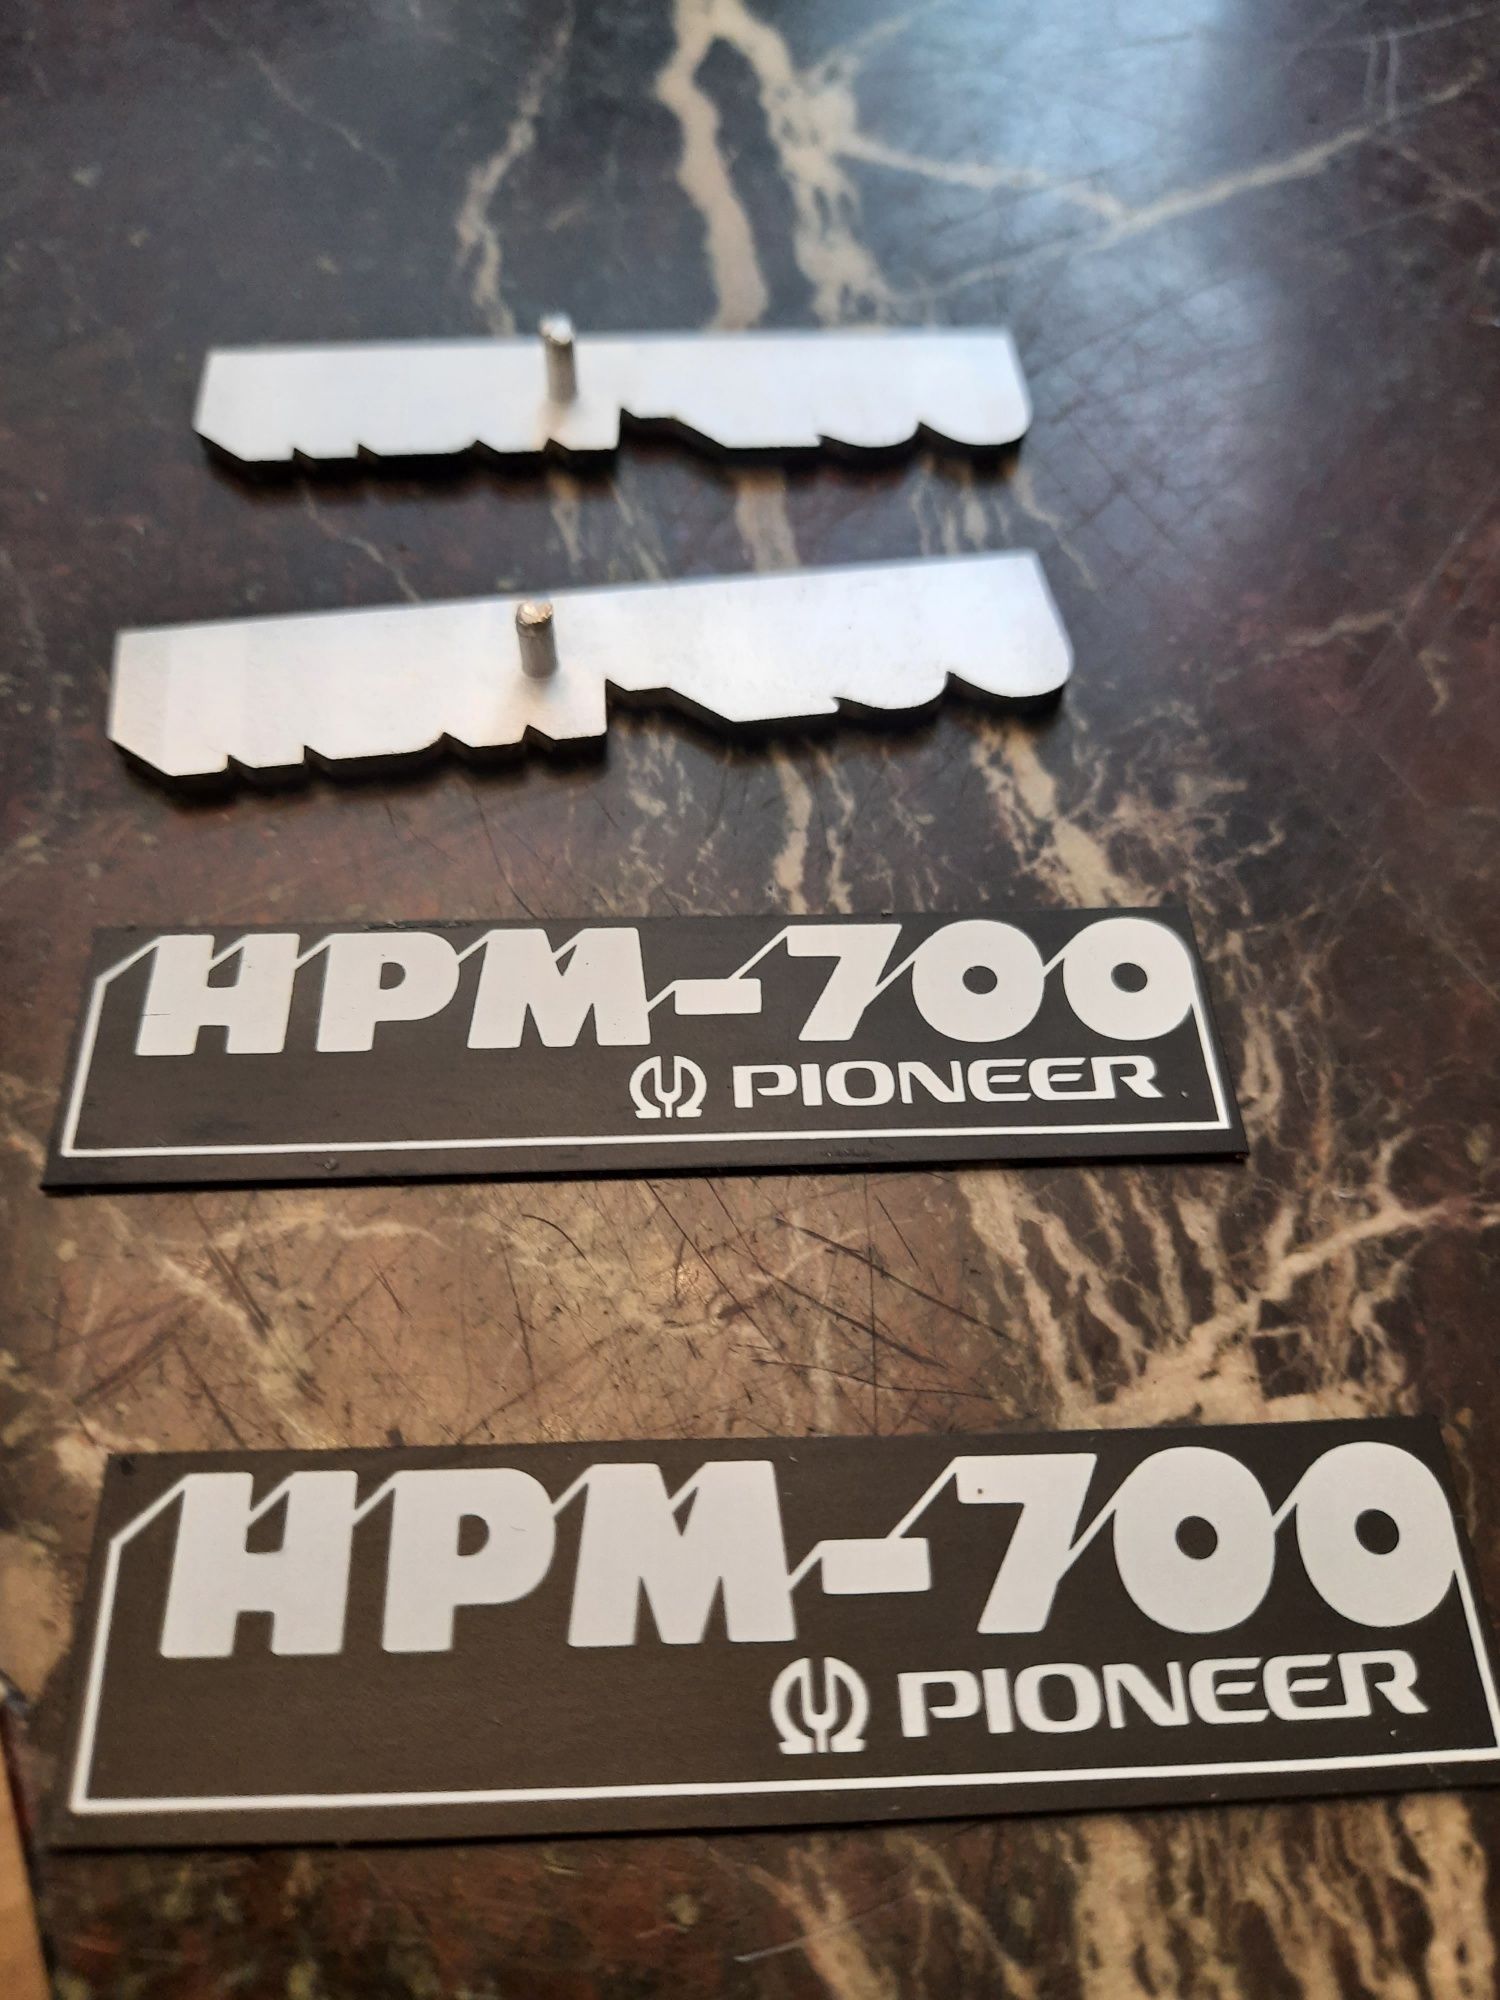 Pioneer hpm 700 logo.